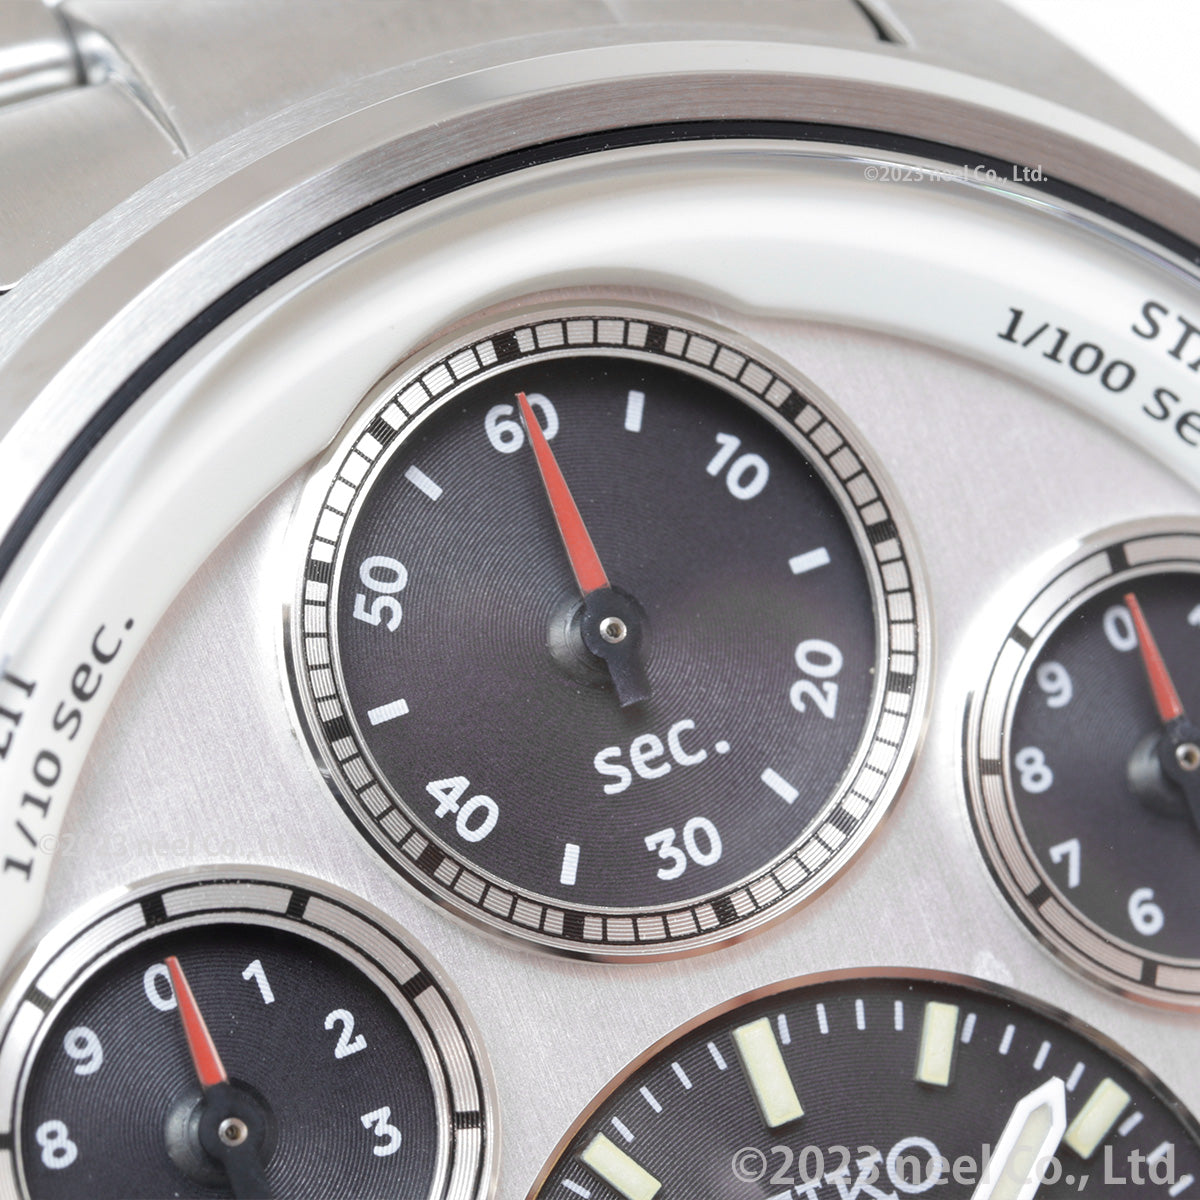 セイコー プロスペックス SBER009 スピードタイマー ソーラー クロノグラフ セイコー腕時計110周年 限定 腕時計 メンズ SEIKO PROSPEX SPEEDTIMER